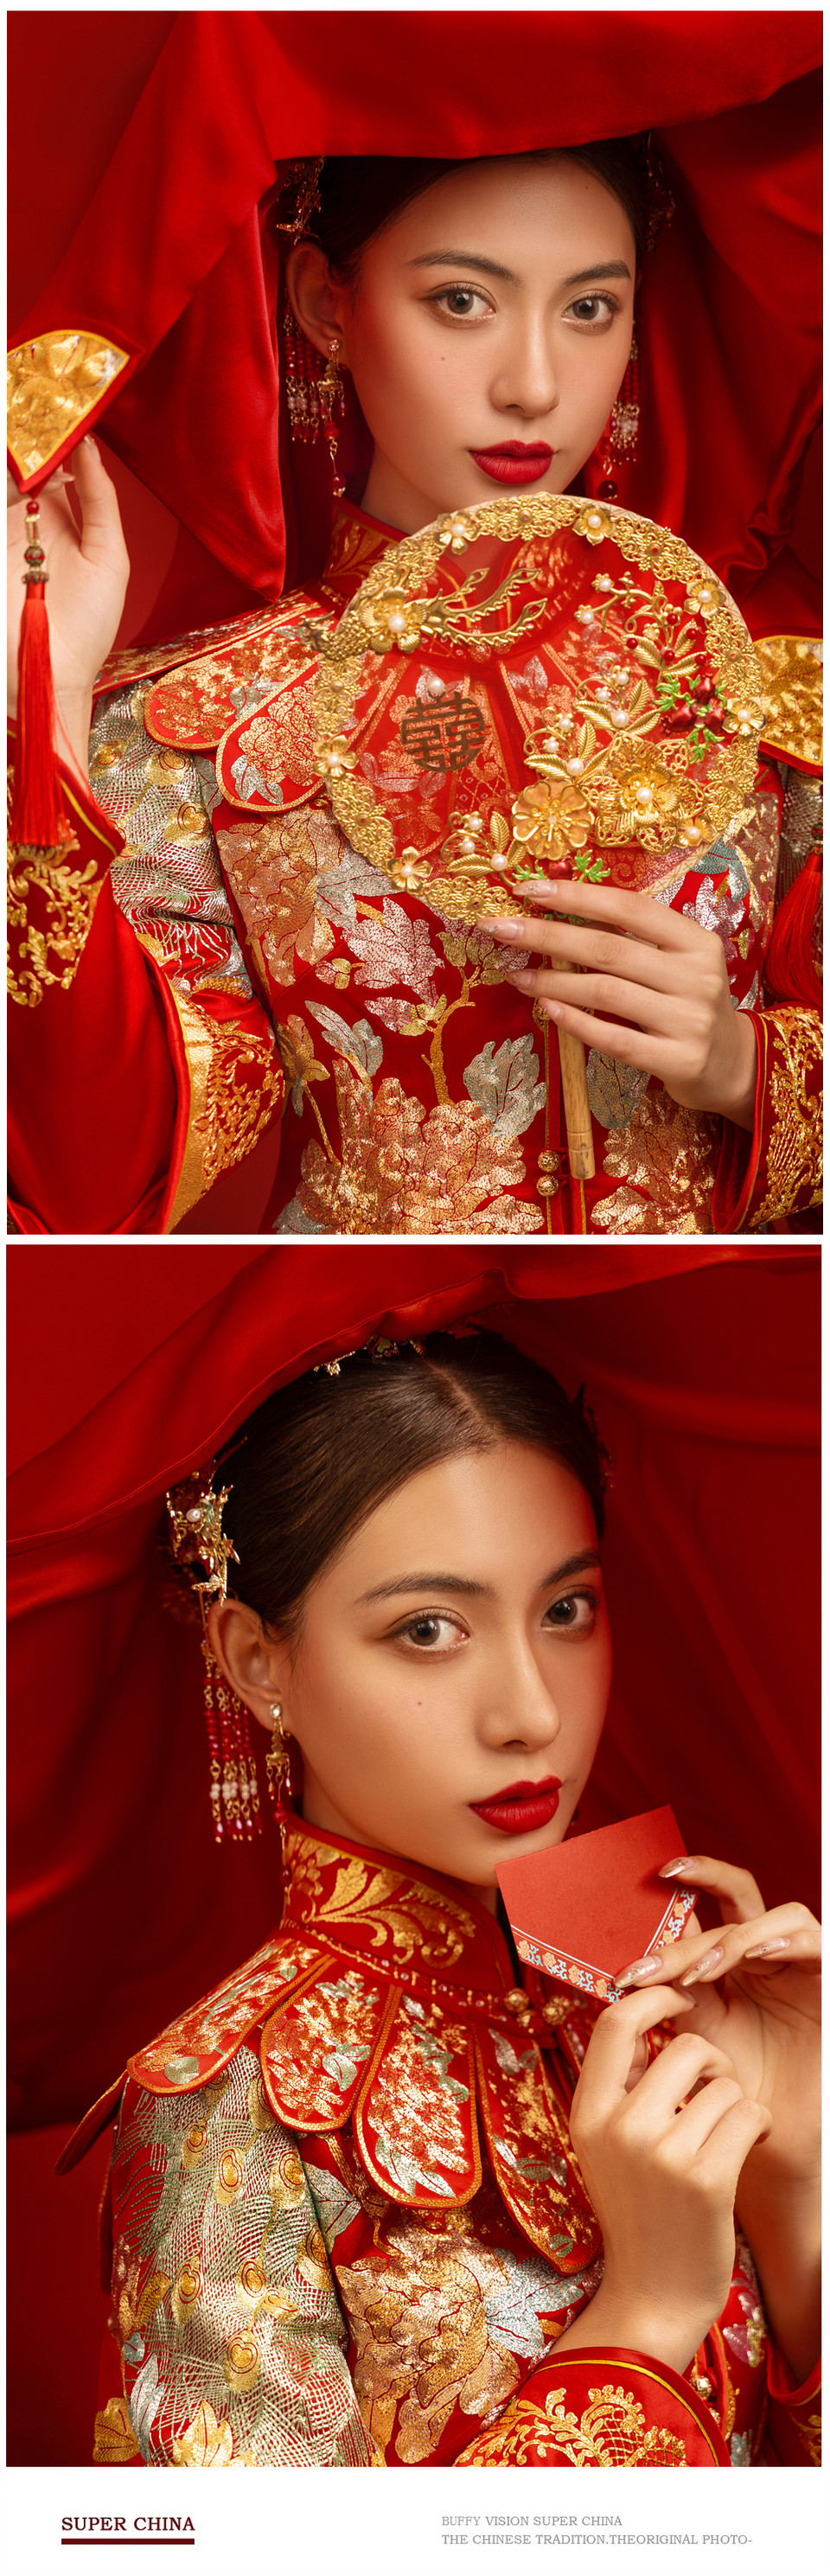 【喜嫁良缘|底片全送】 新中式|婚纱照